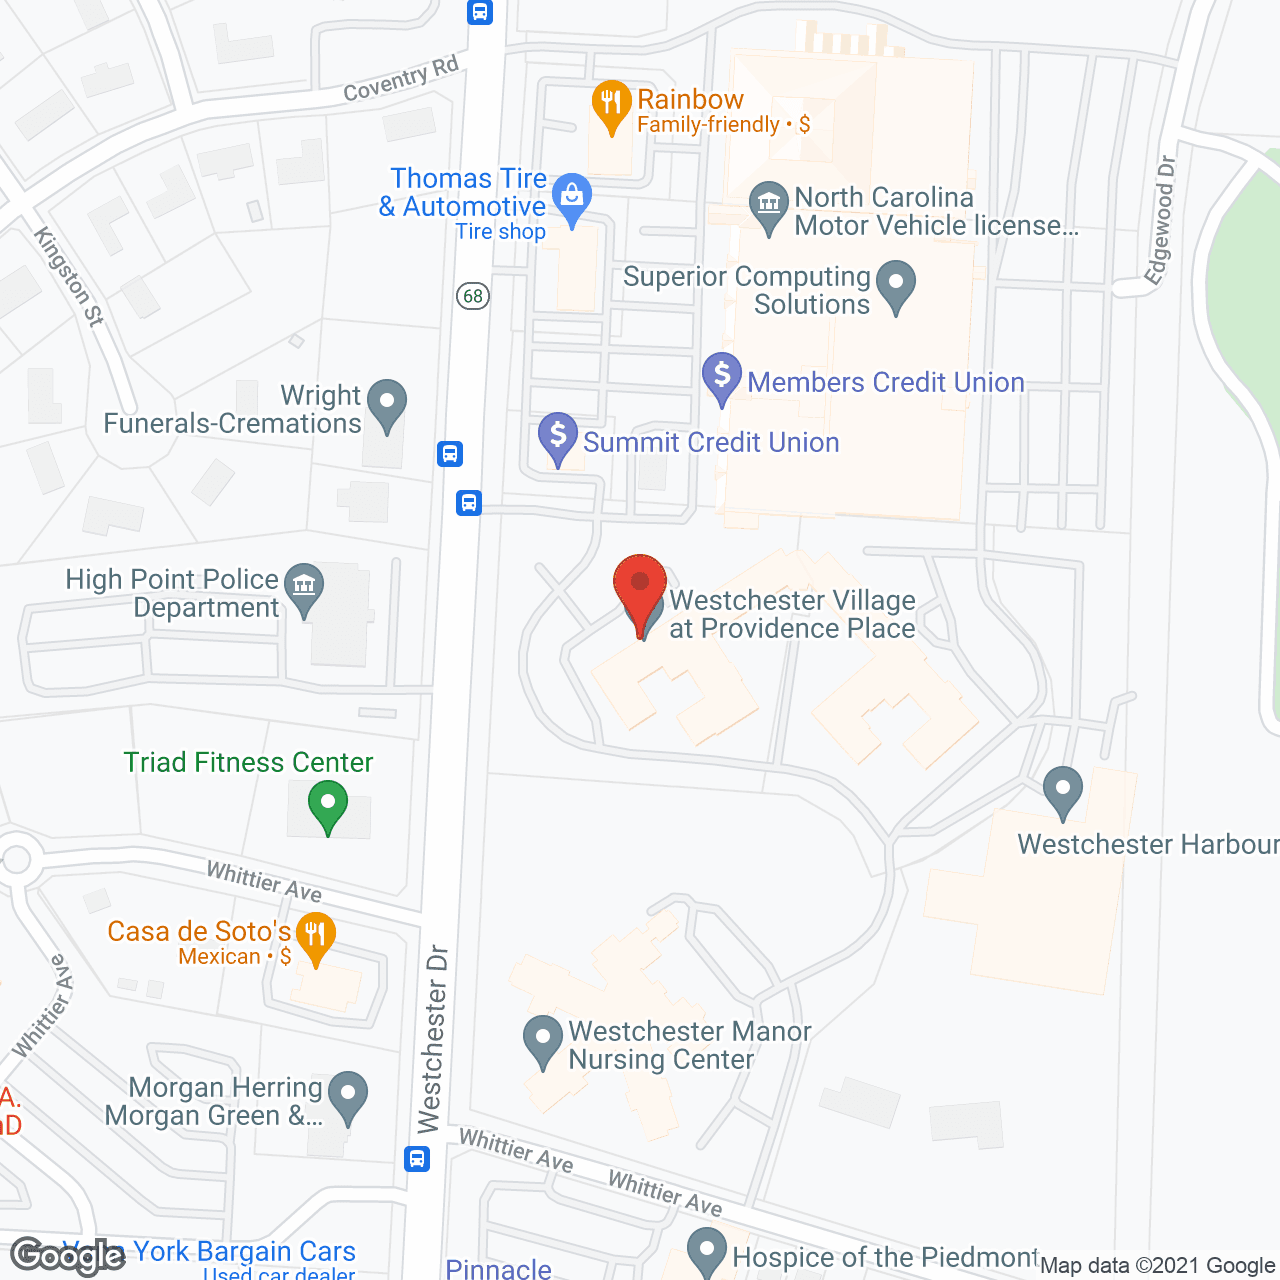 Westchester Village in google map